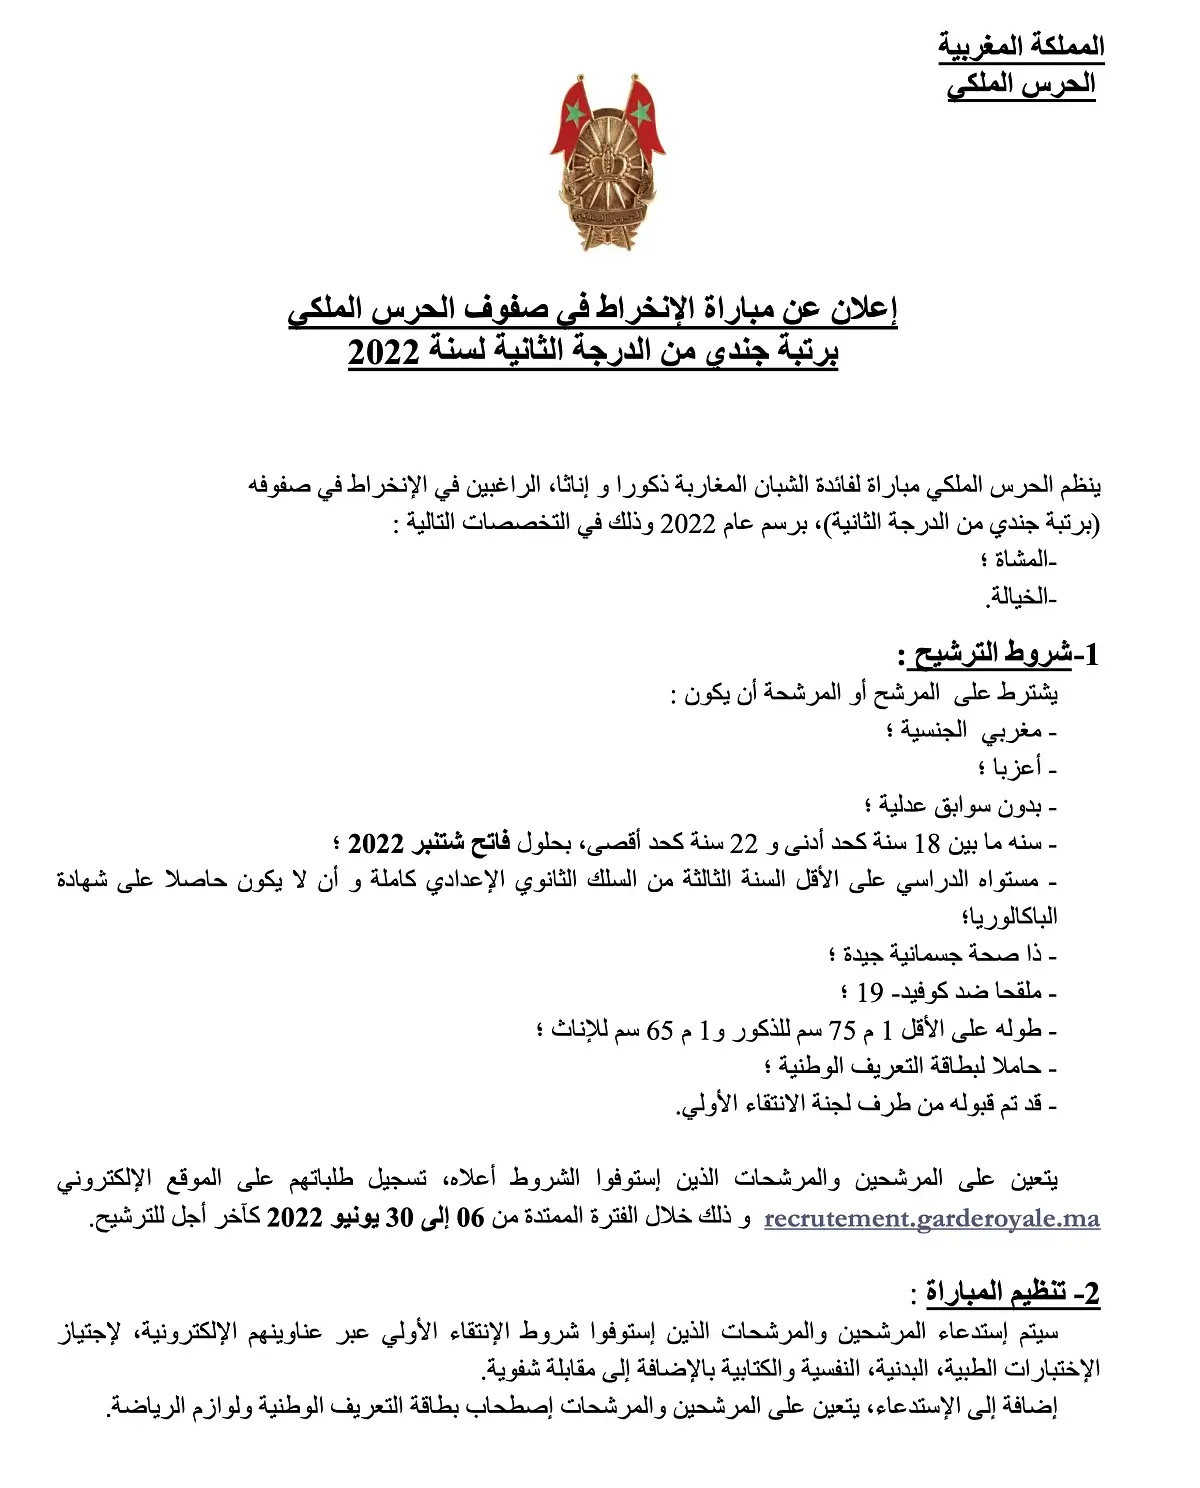 الإعلان الرسمي بالعربية الحرس الملكي مباراة توظيف جنود من الدرجة الثانية -ذكور وإناث- تخصصي المشاة والخيالة. الترشيح من 6 إلى 30 يونيو 2022